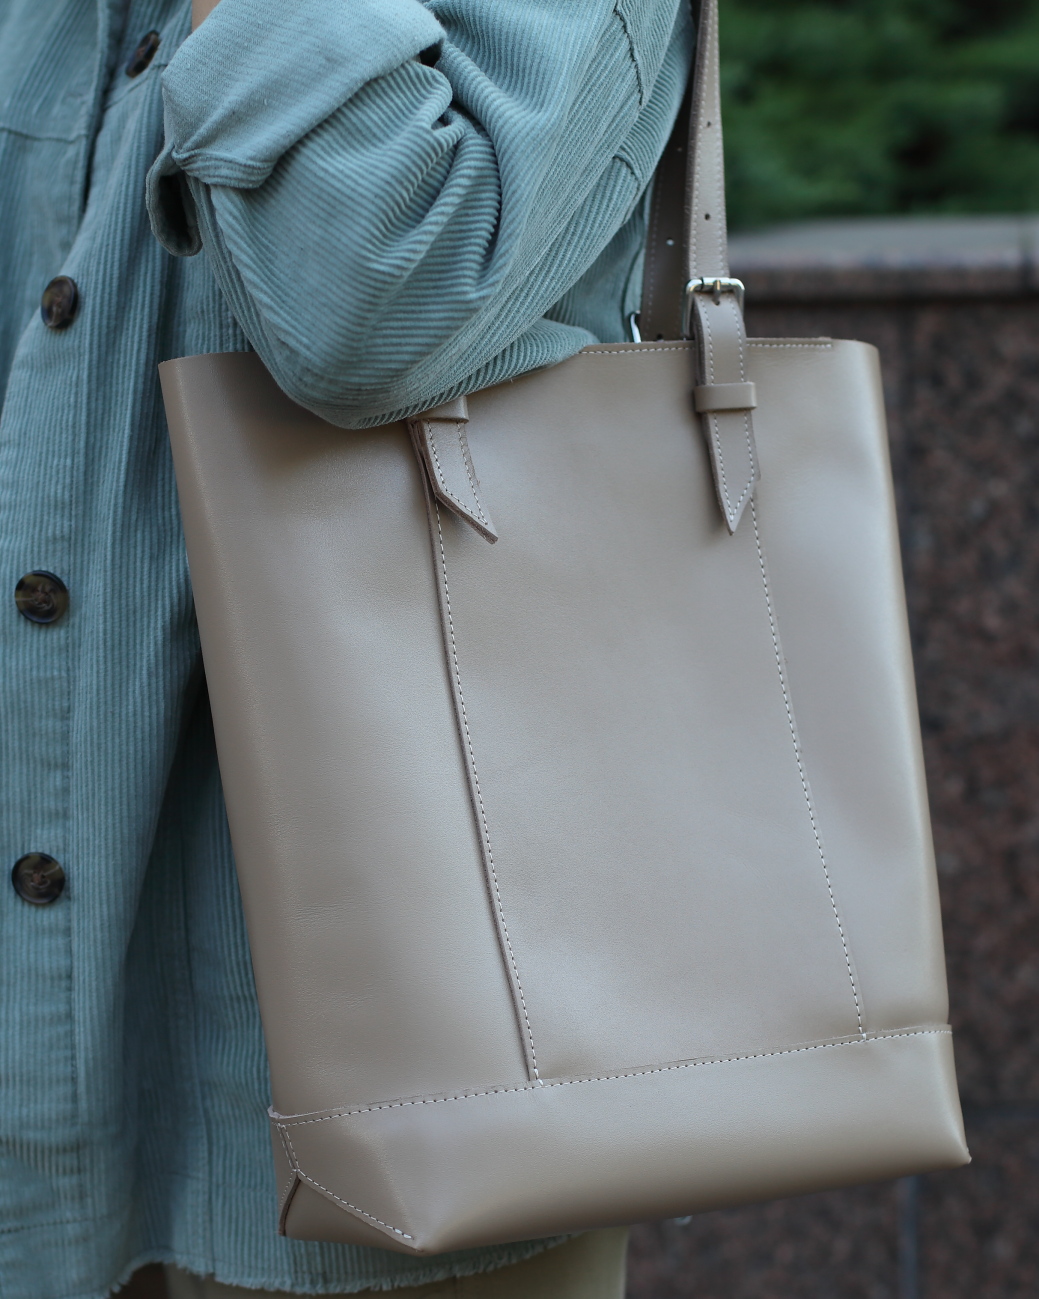 Женская сумка-шоппер из натуральной кожи бежевая A014 beige ZIPPER